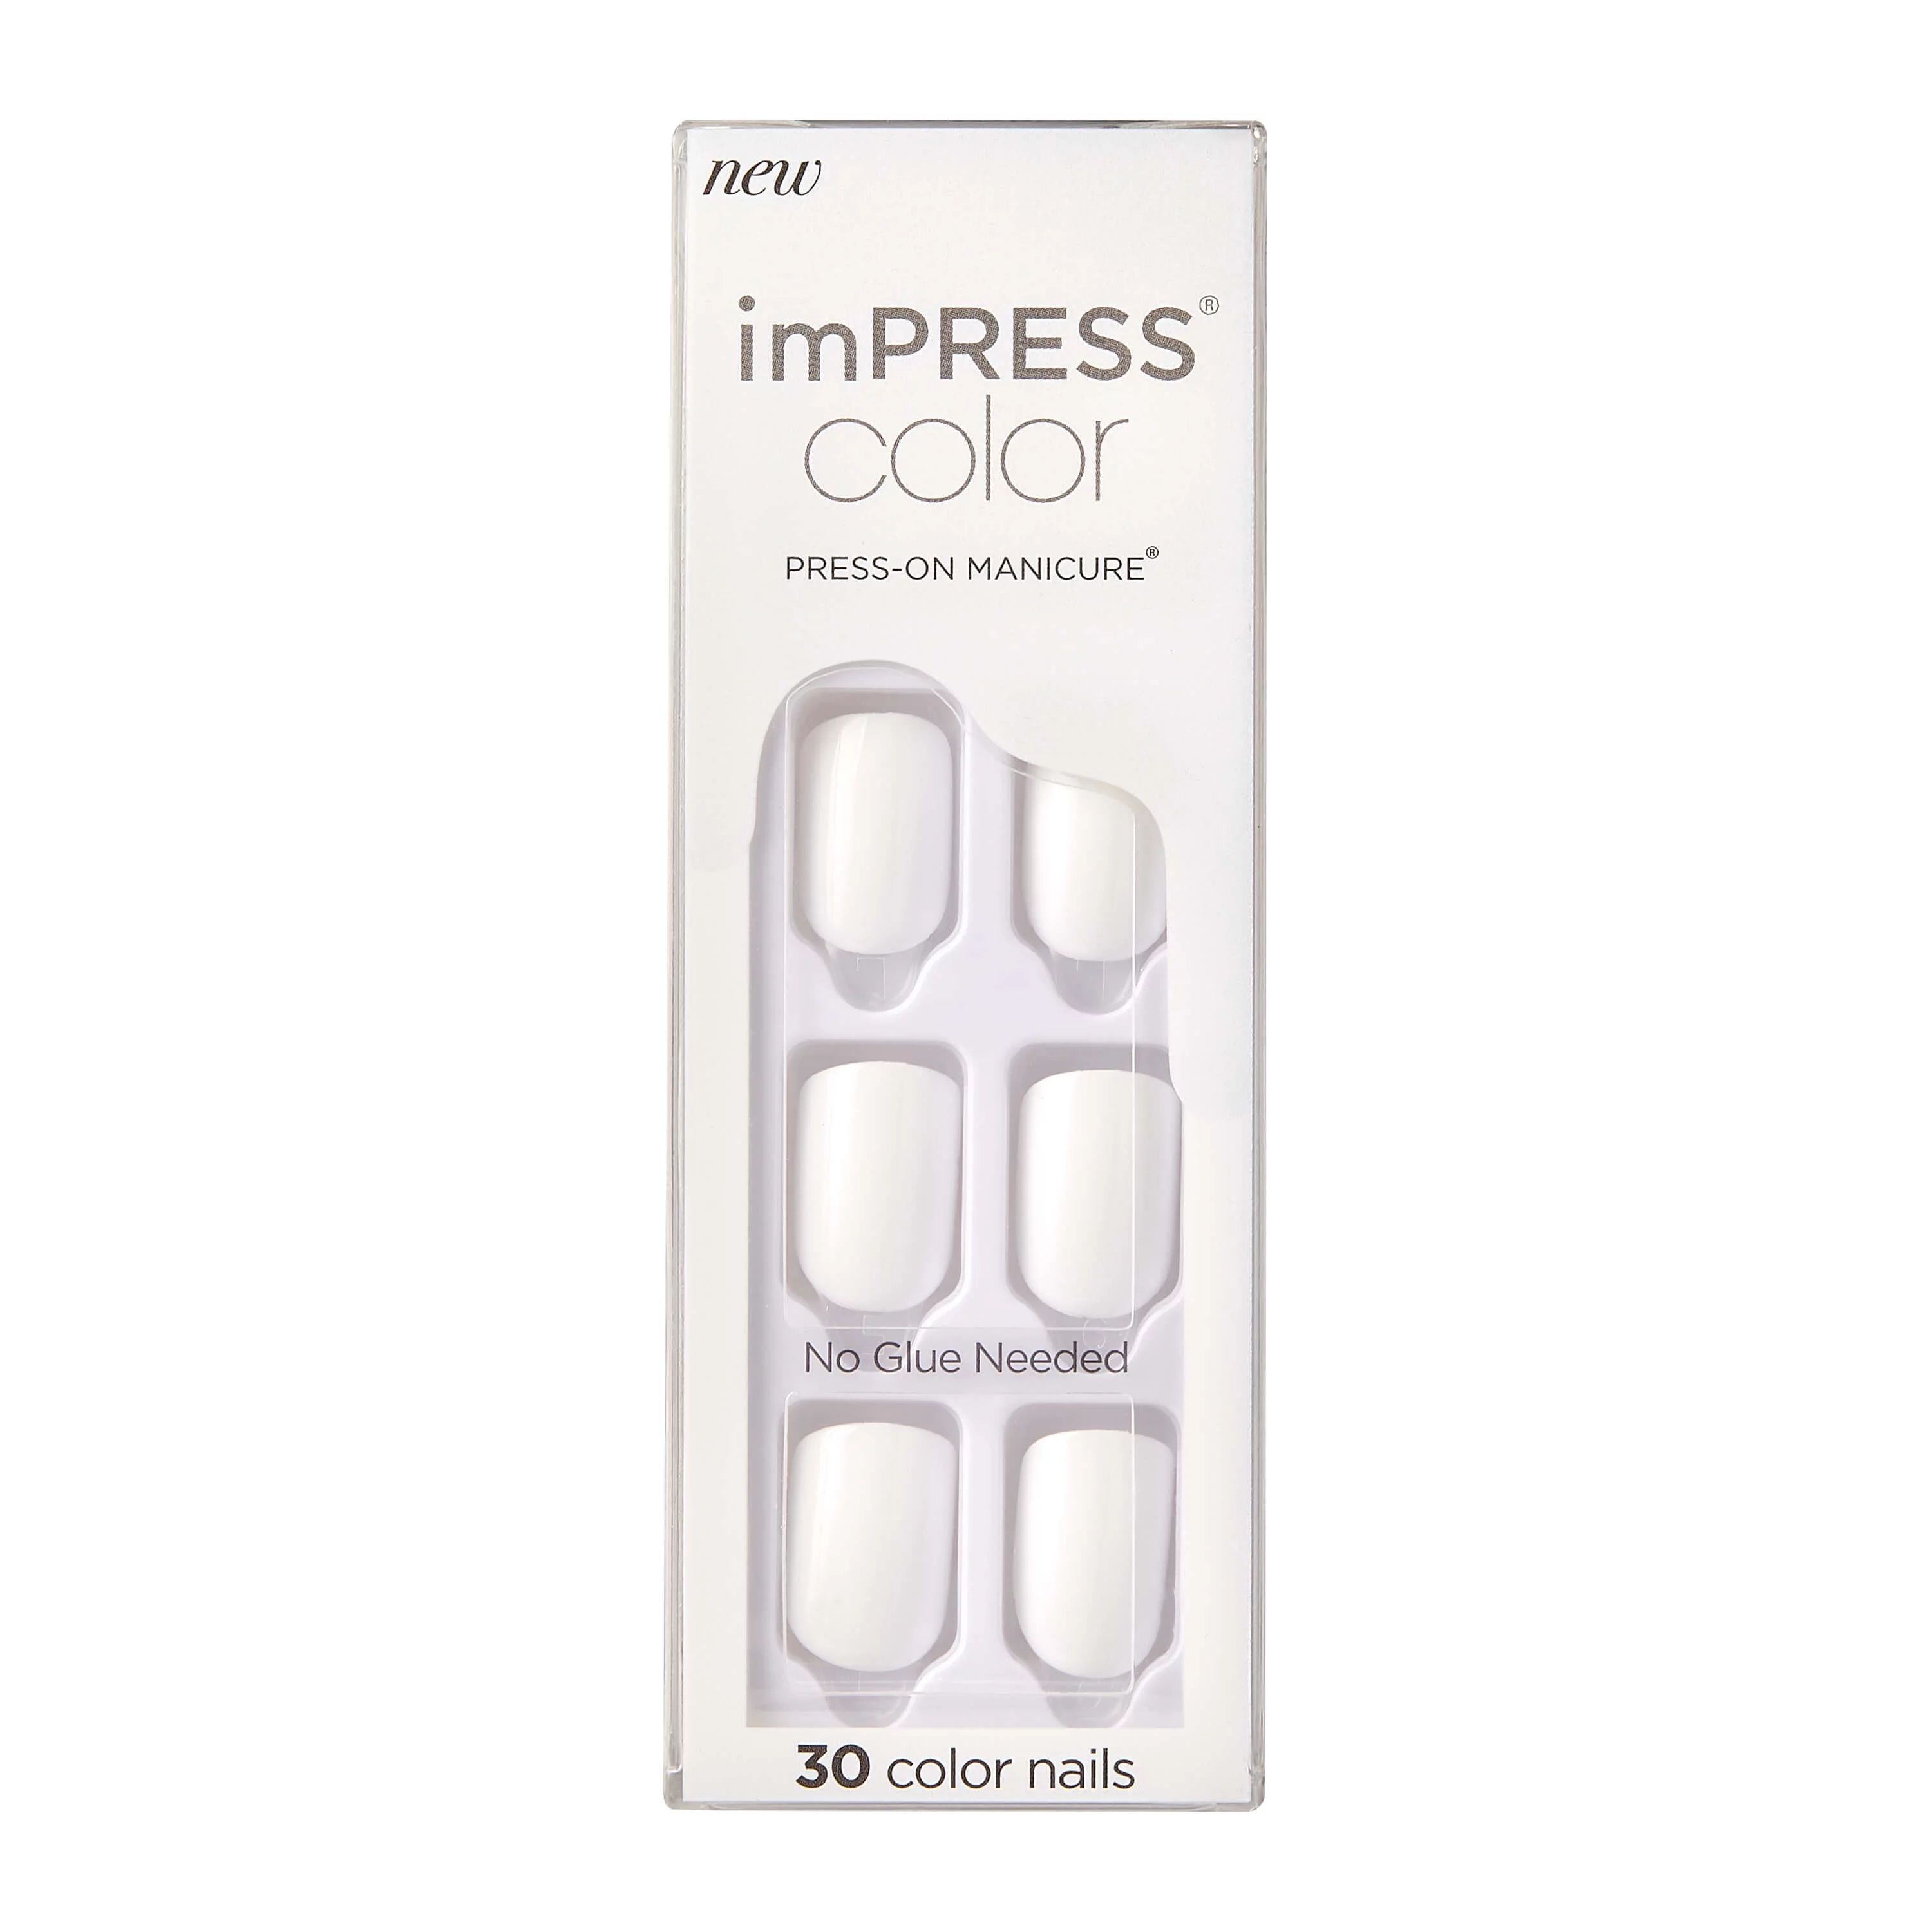 imPRESS Color Press-on Manicure, Frosting, Short | Walmart (US)